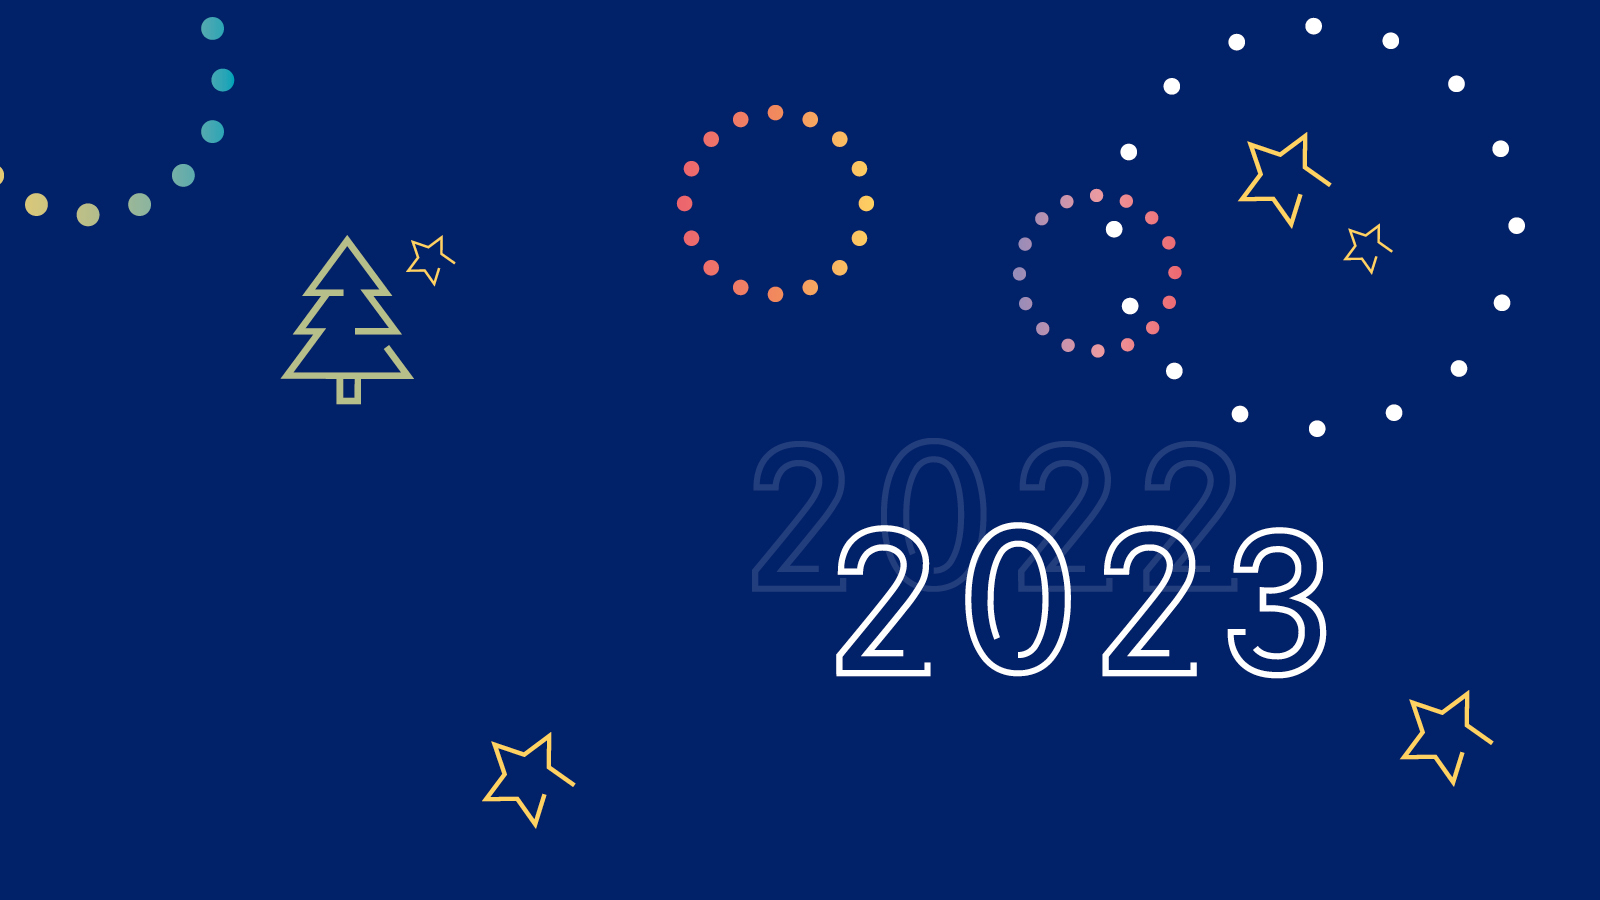 Foto: Jahreswechsel 2022 - 2023